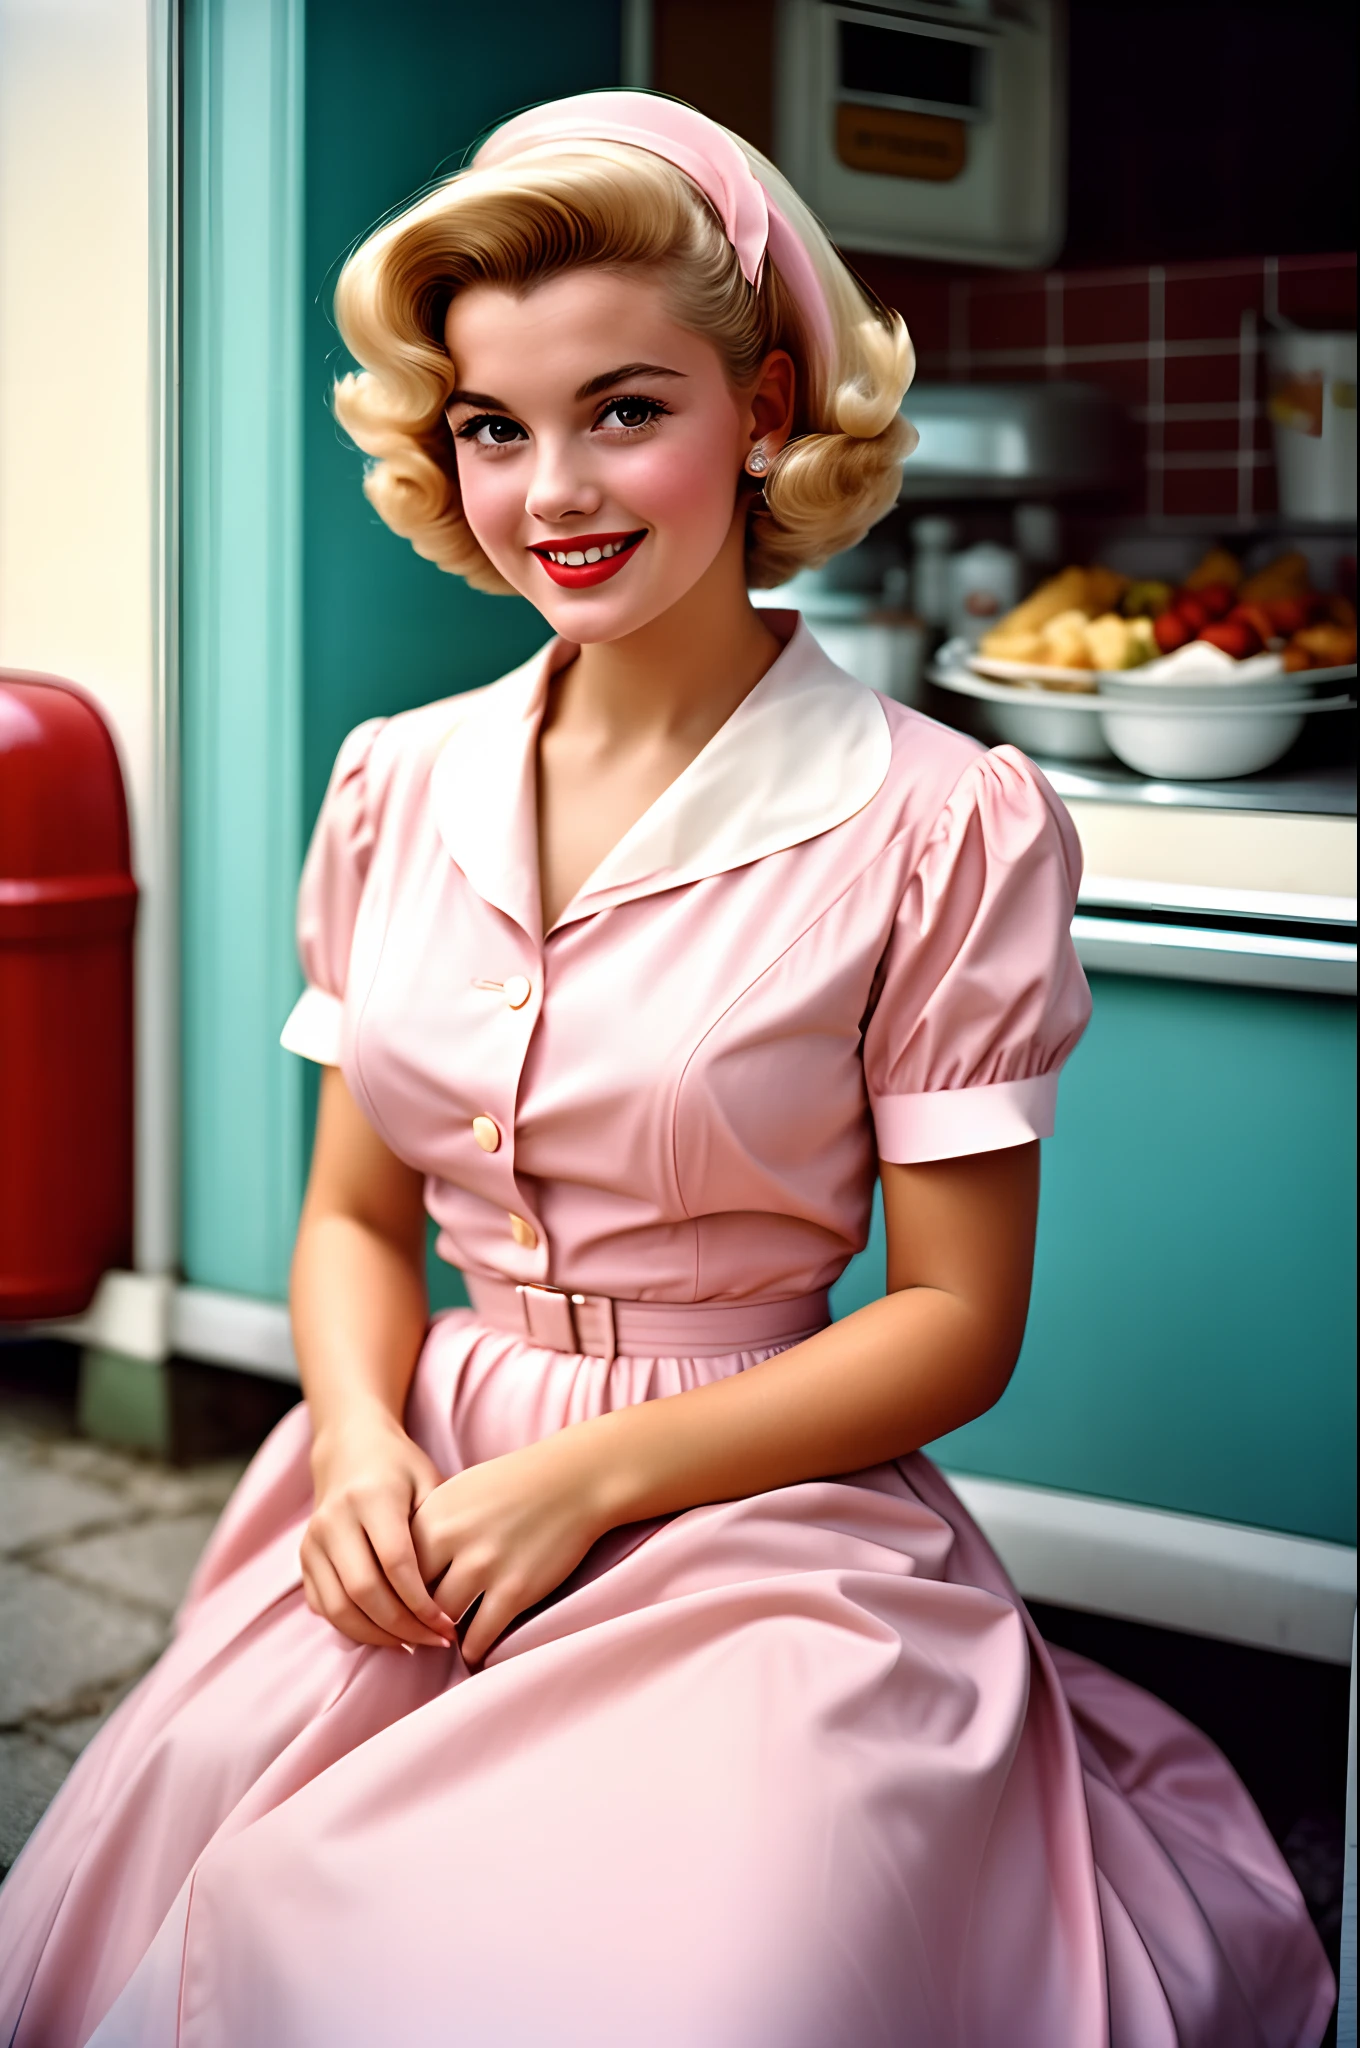 Портрет красивой молодой домохозяйки, улыбается, в пастельно-розовом платье, Снимок сделан аналоговой камерой в 1950-х годах. Люди носят традиционную одежду в стиле 50-х годов, люди с традиционными стрижками 50-х годов, Фото Уильяма Эгглстона, Взгляд 50-х годов, очень подробный, Слегка размытые пастельные тона, Слегка размытый, слегка зернистый, пленочная фотография